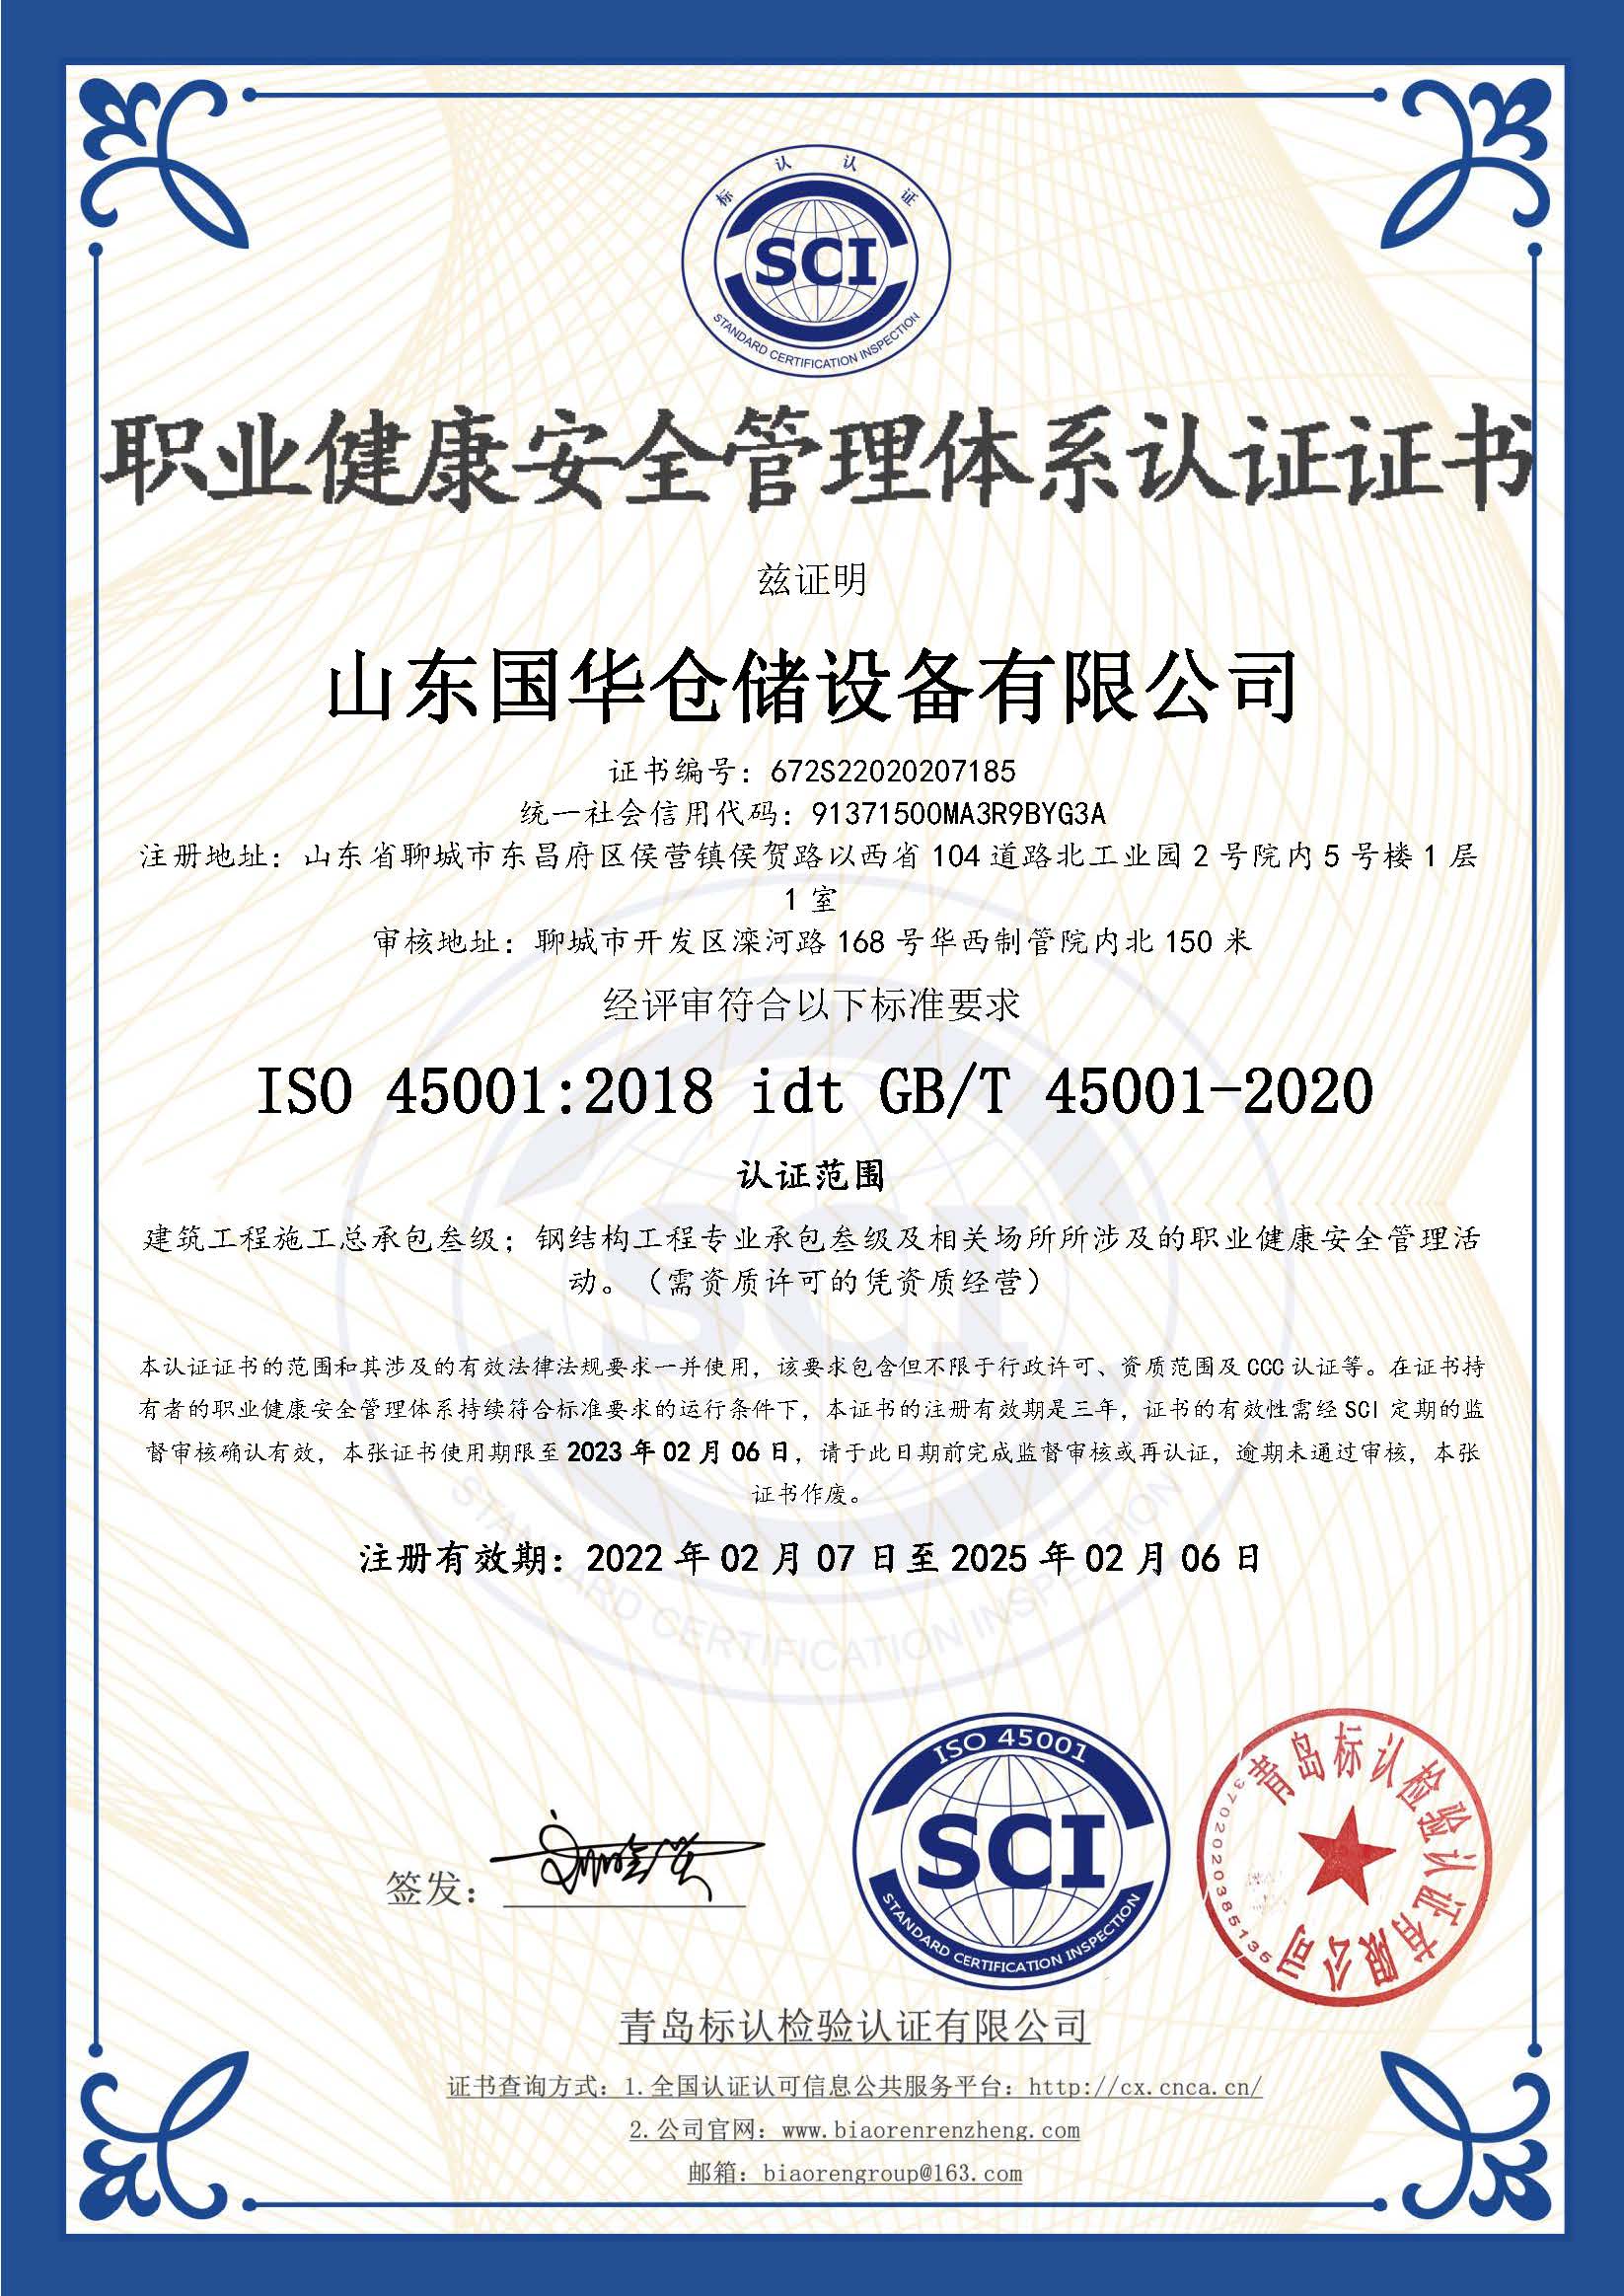 石河子钢板仓职业健康安全管理体系认证证书